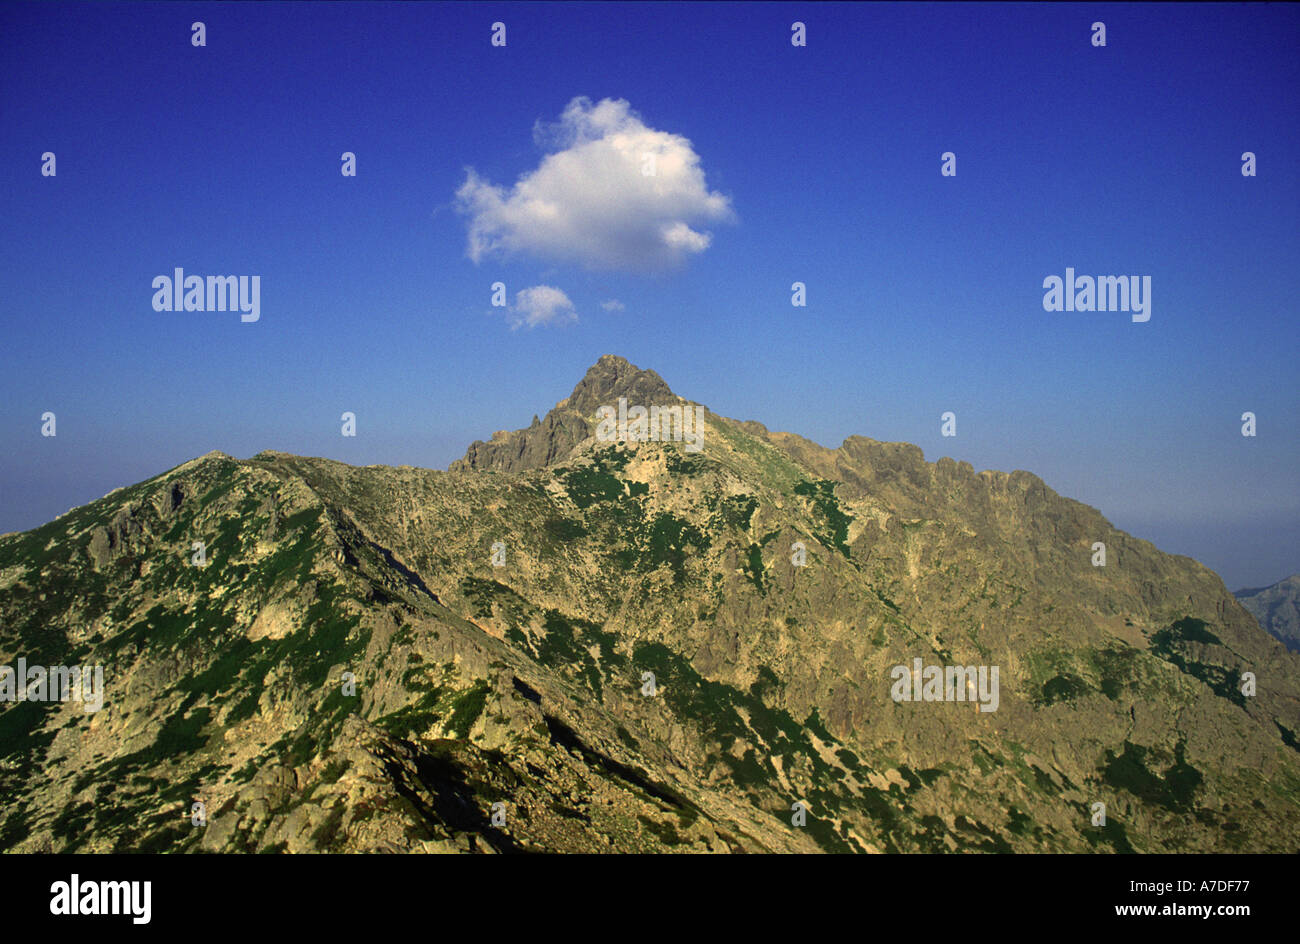 Un nuage flotte au-dessus du sommet du Monte d'Oro sur le GR20 dans les montagnes de la Corse. Banque D'Images